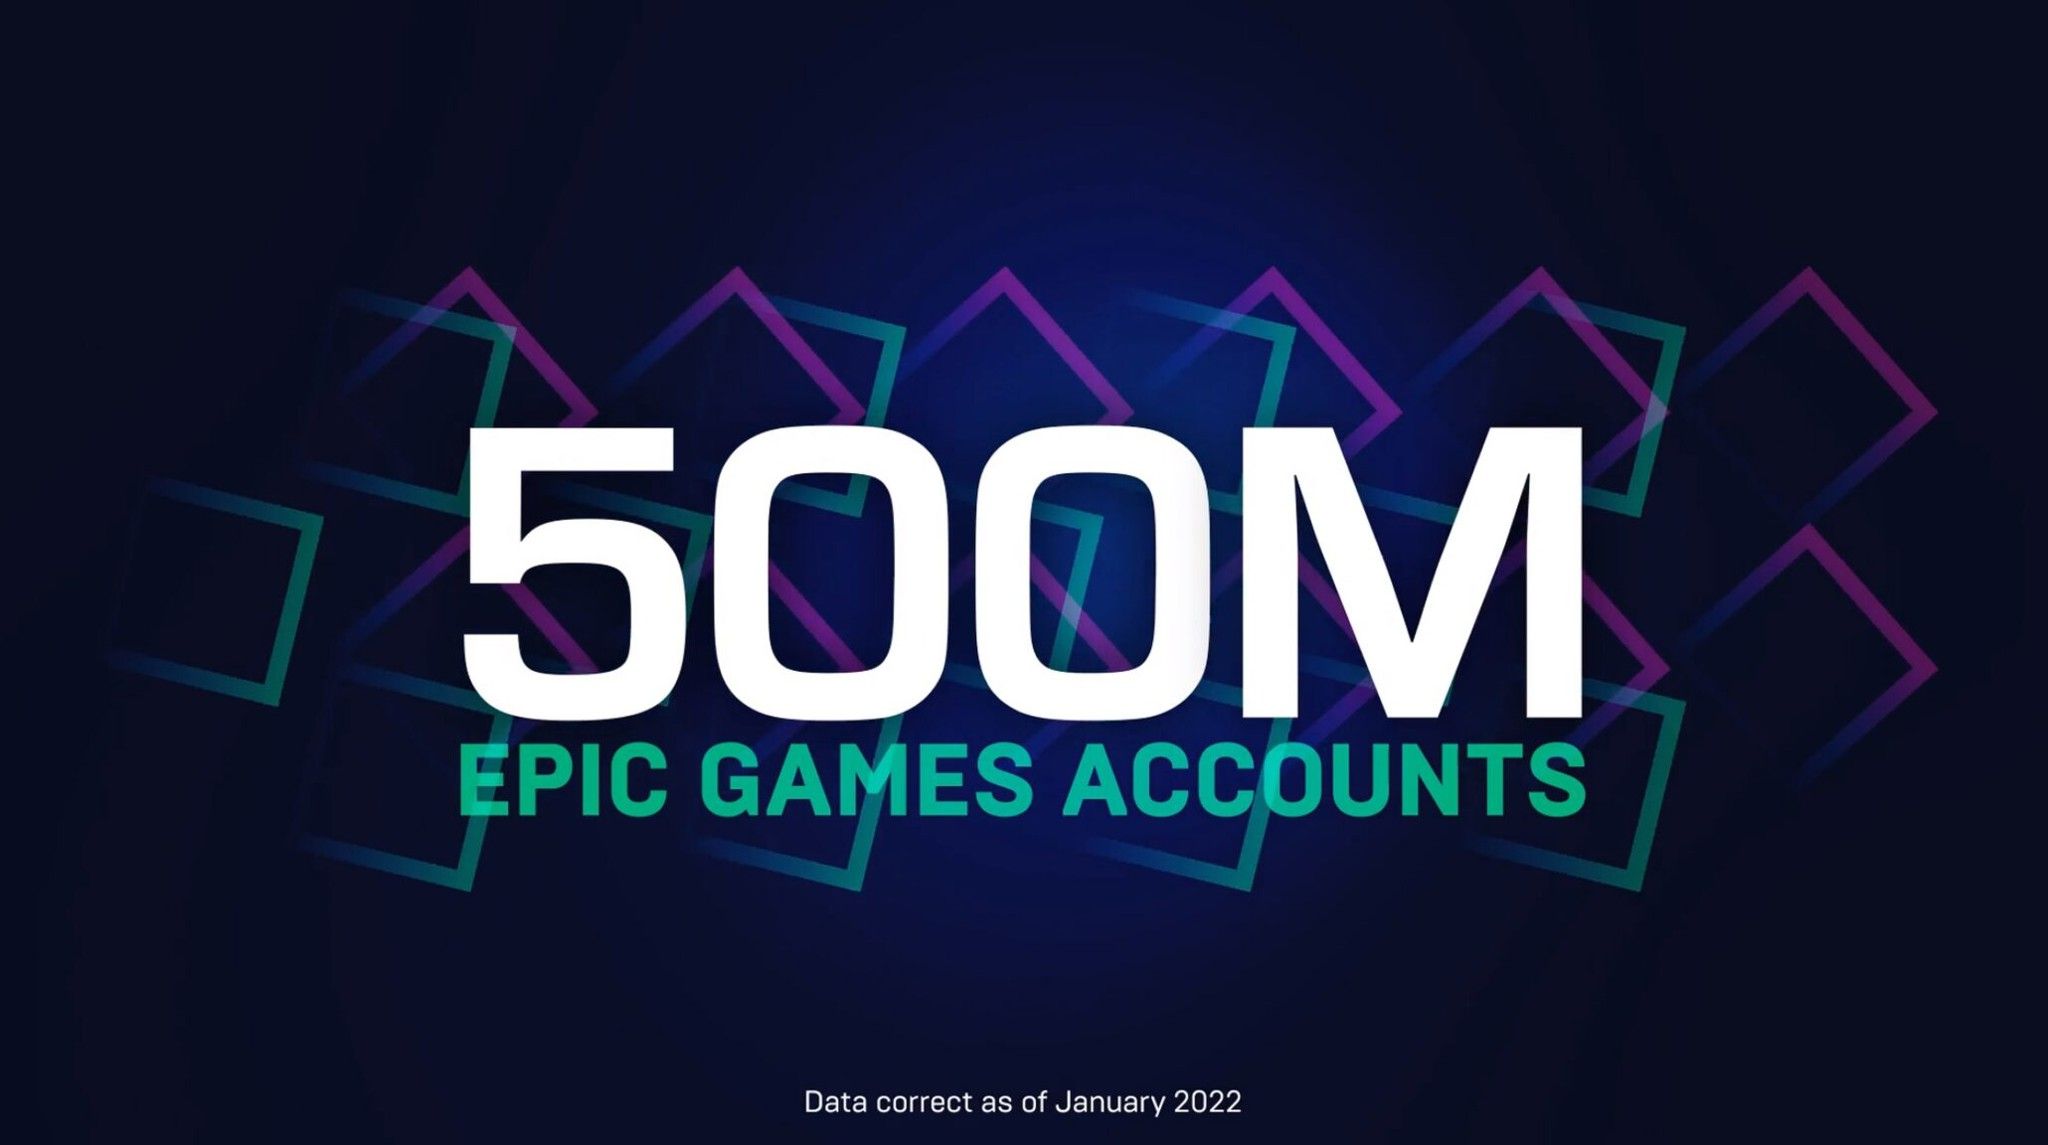 “Nhà từ thiện” Epic Games chính thức cán mốc 500 triệu tài khoản người dùng